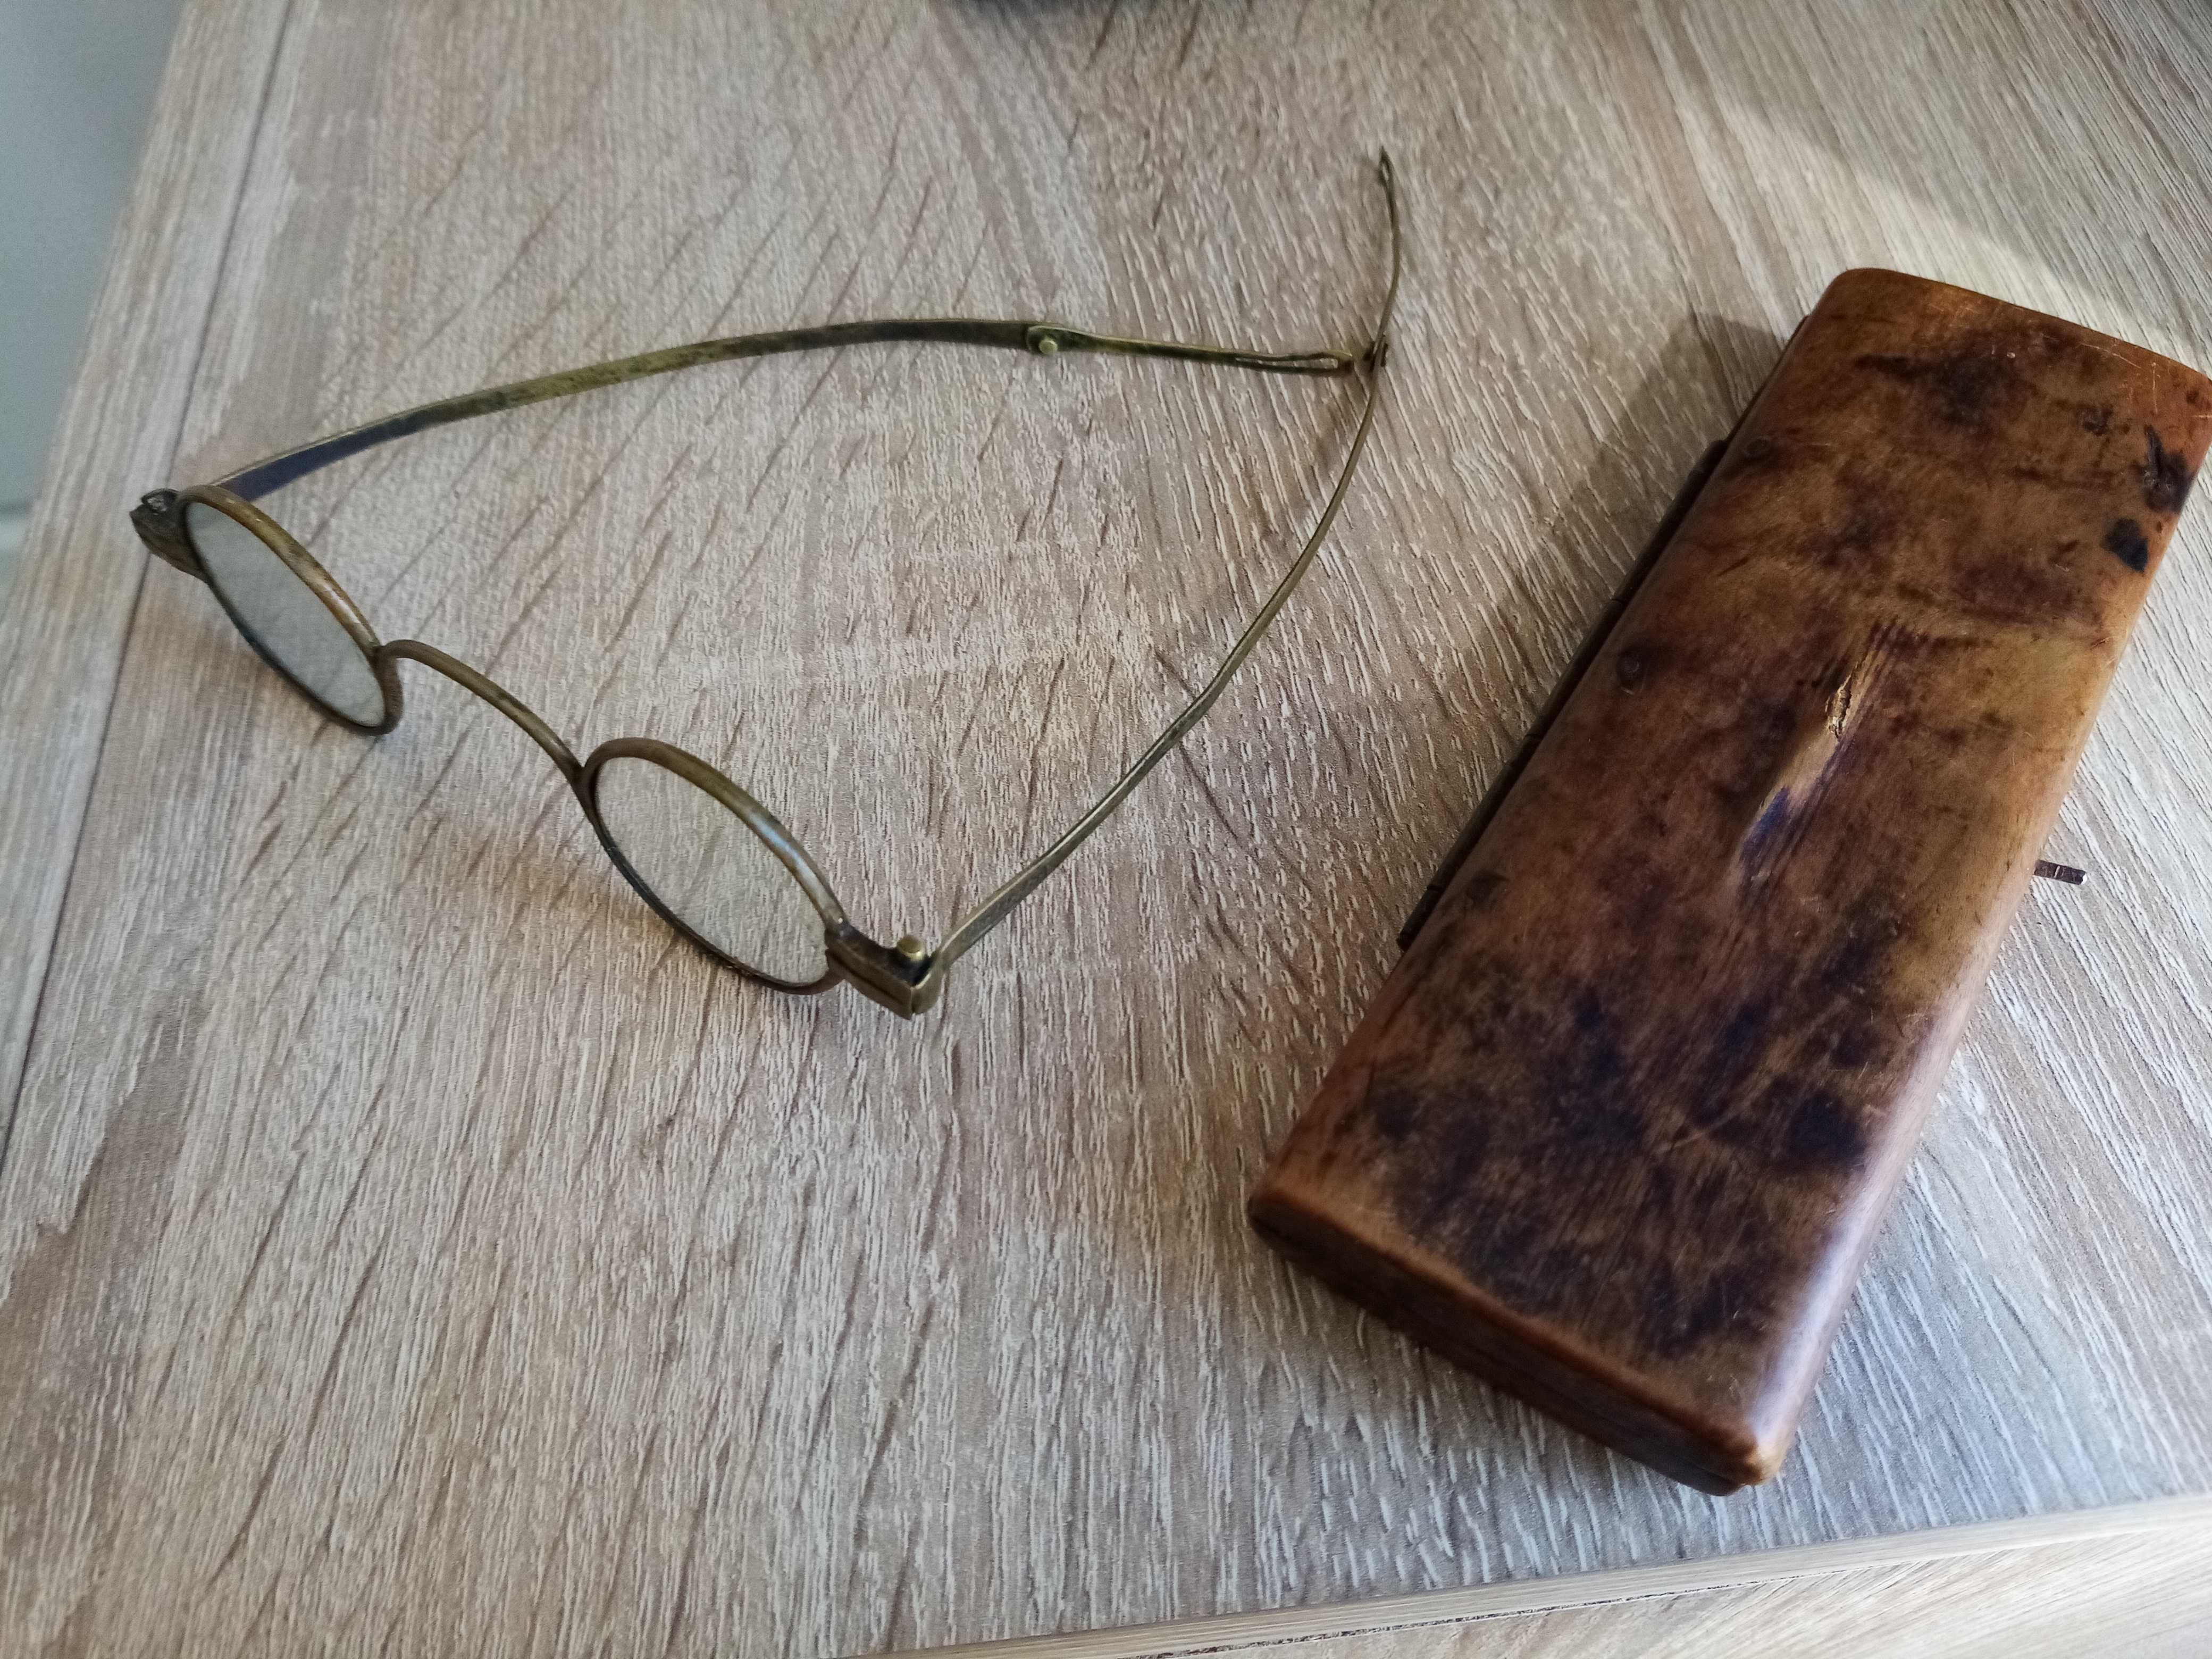 Zabytkowe unikatowe okulary i etui firmy Strohhecker z końca 19 wieku